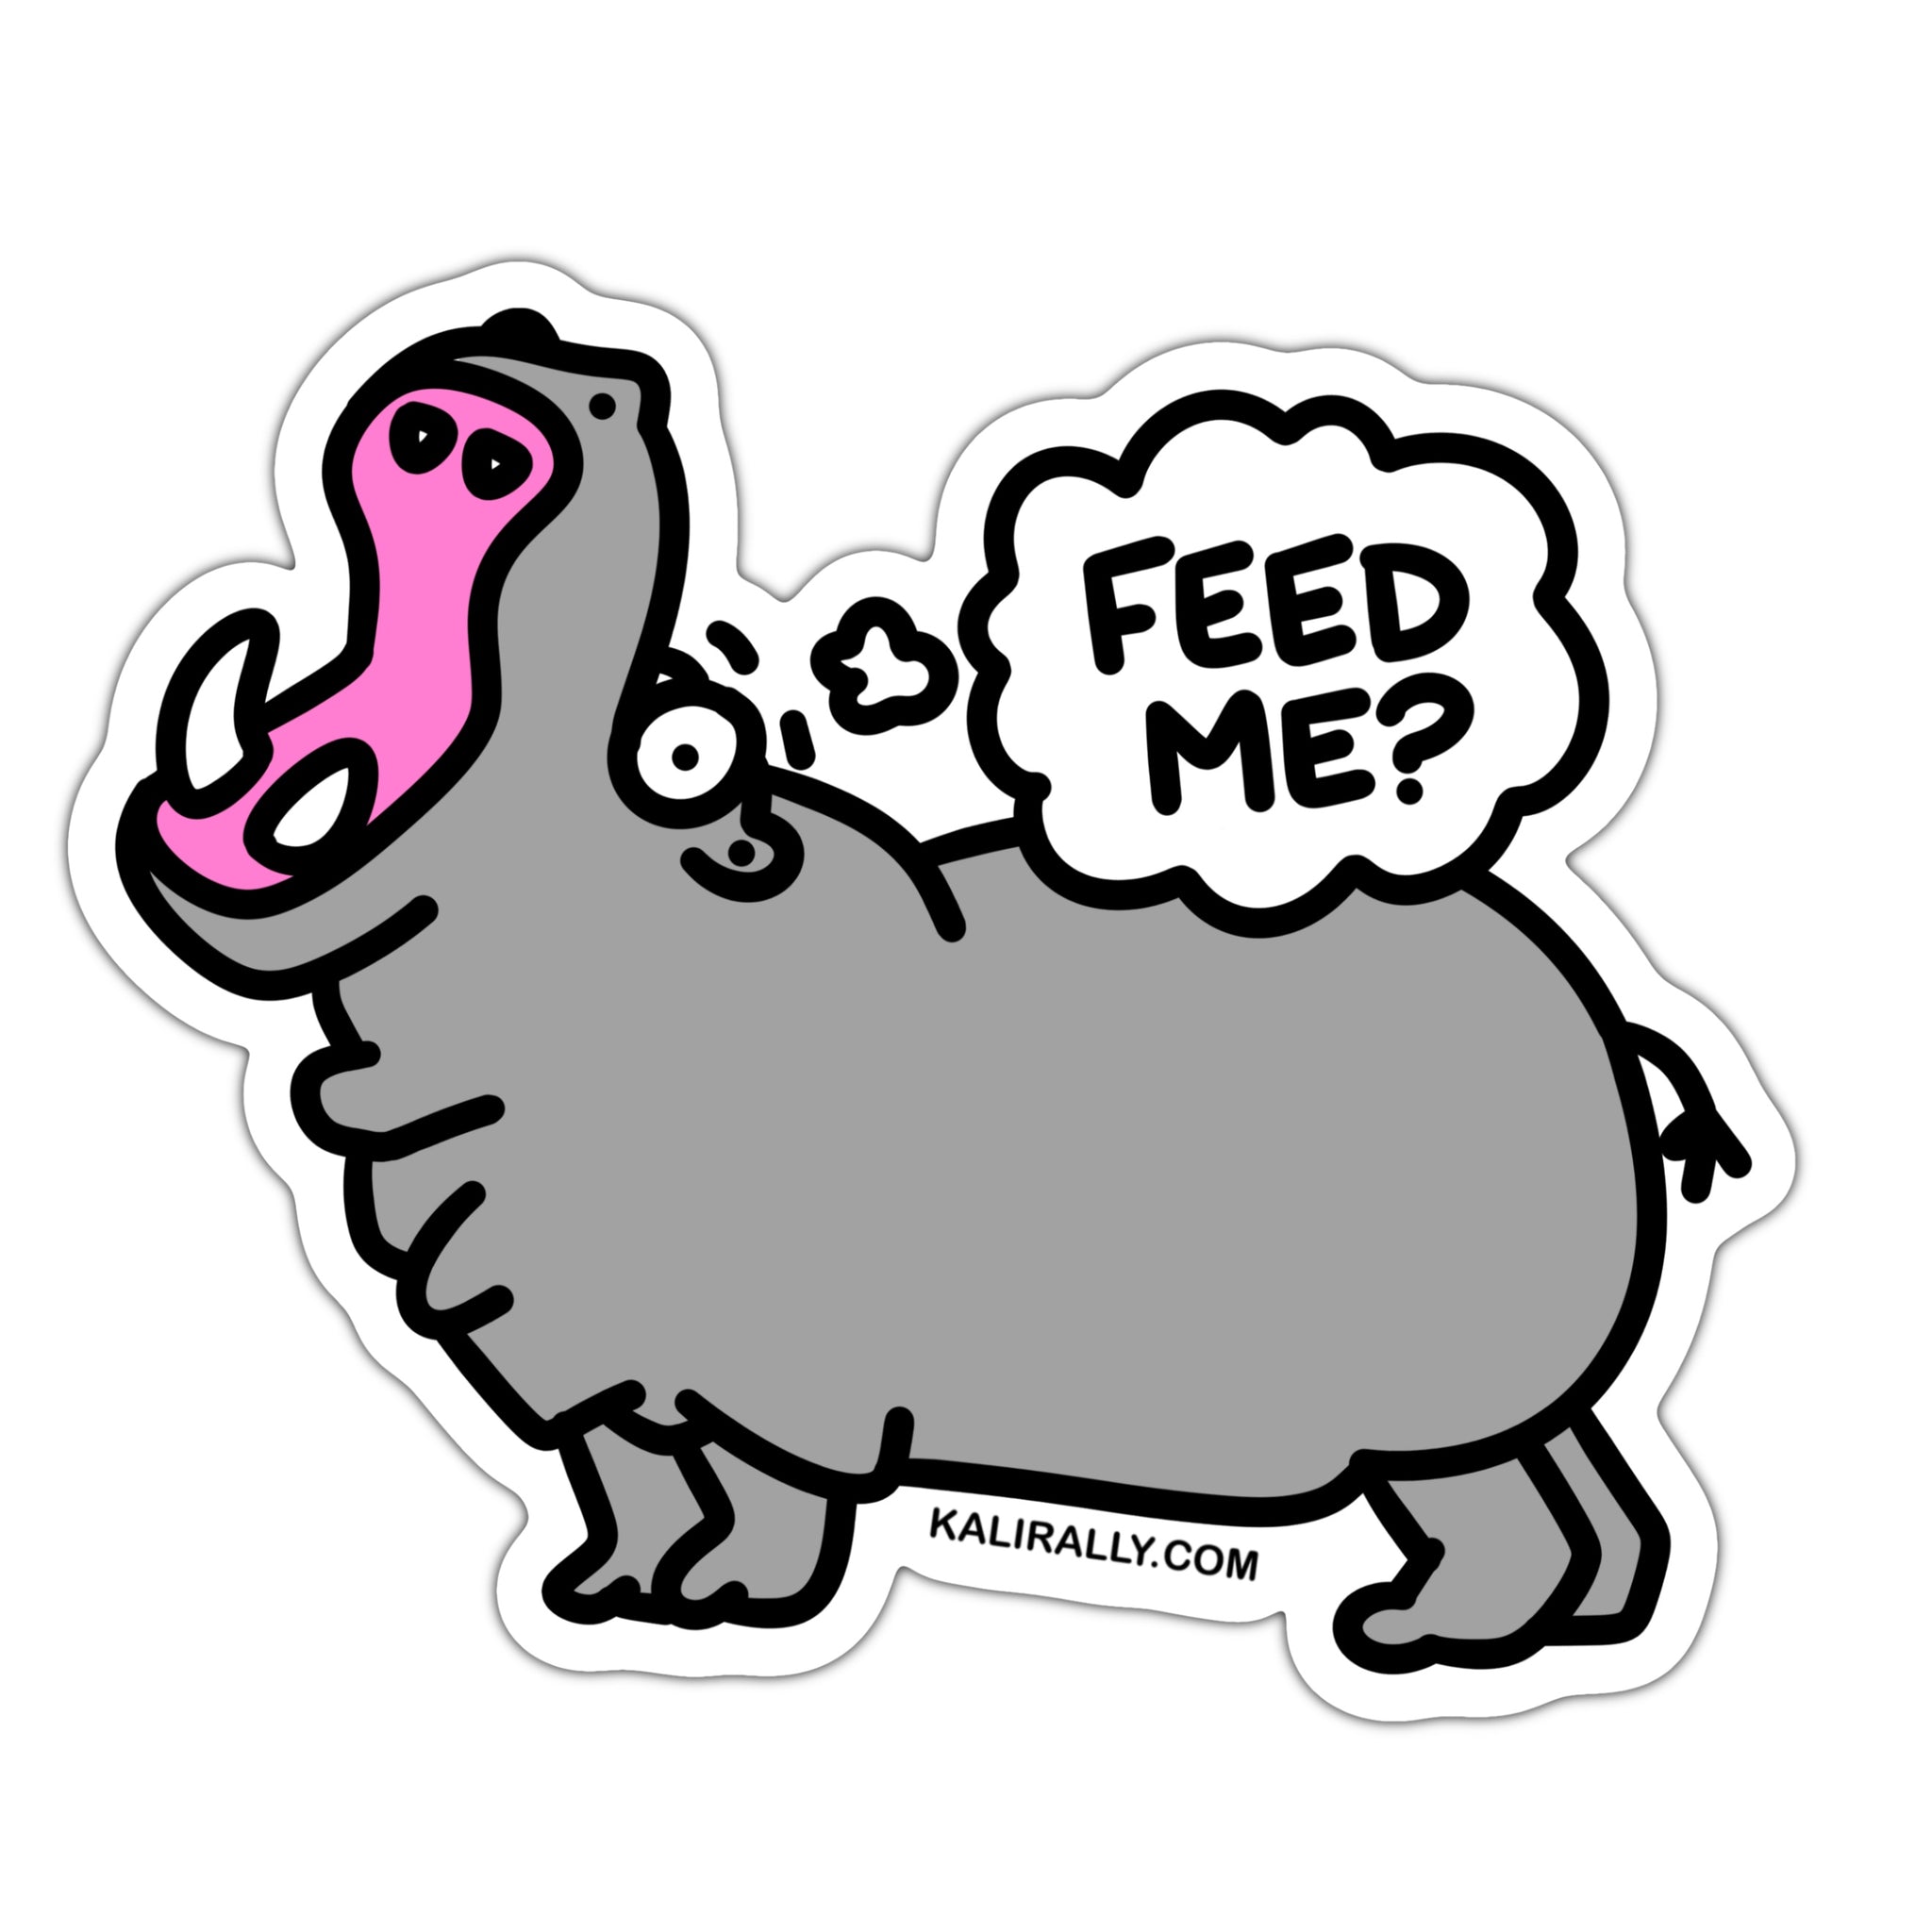 Funny feed me hippo sticker, food sticker, eating sticker, snacks sticker, waterproof vinyl sticker